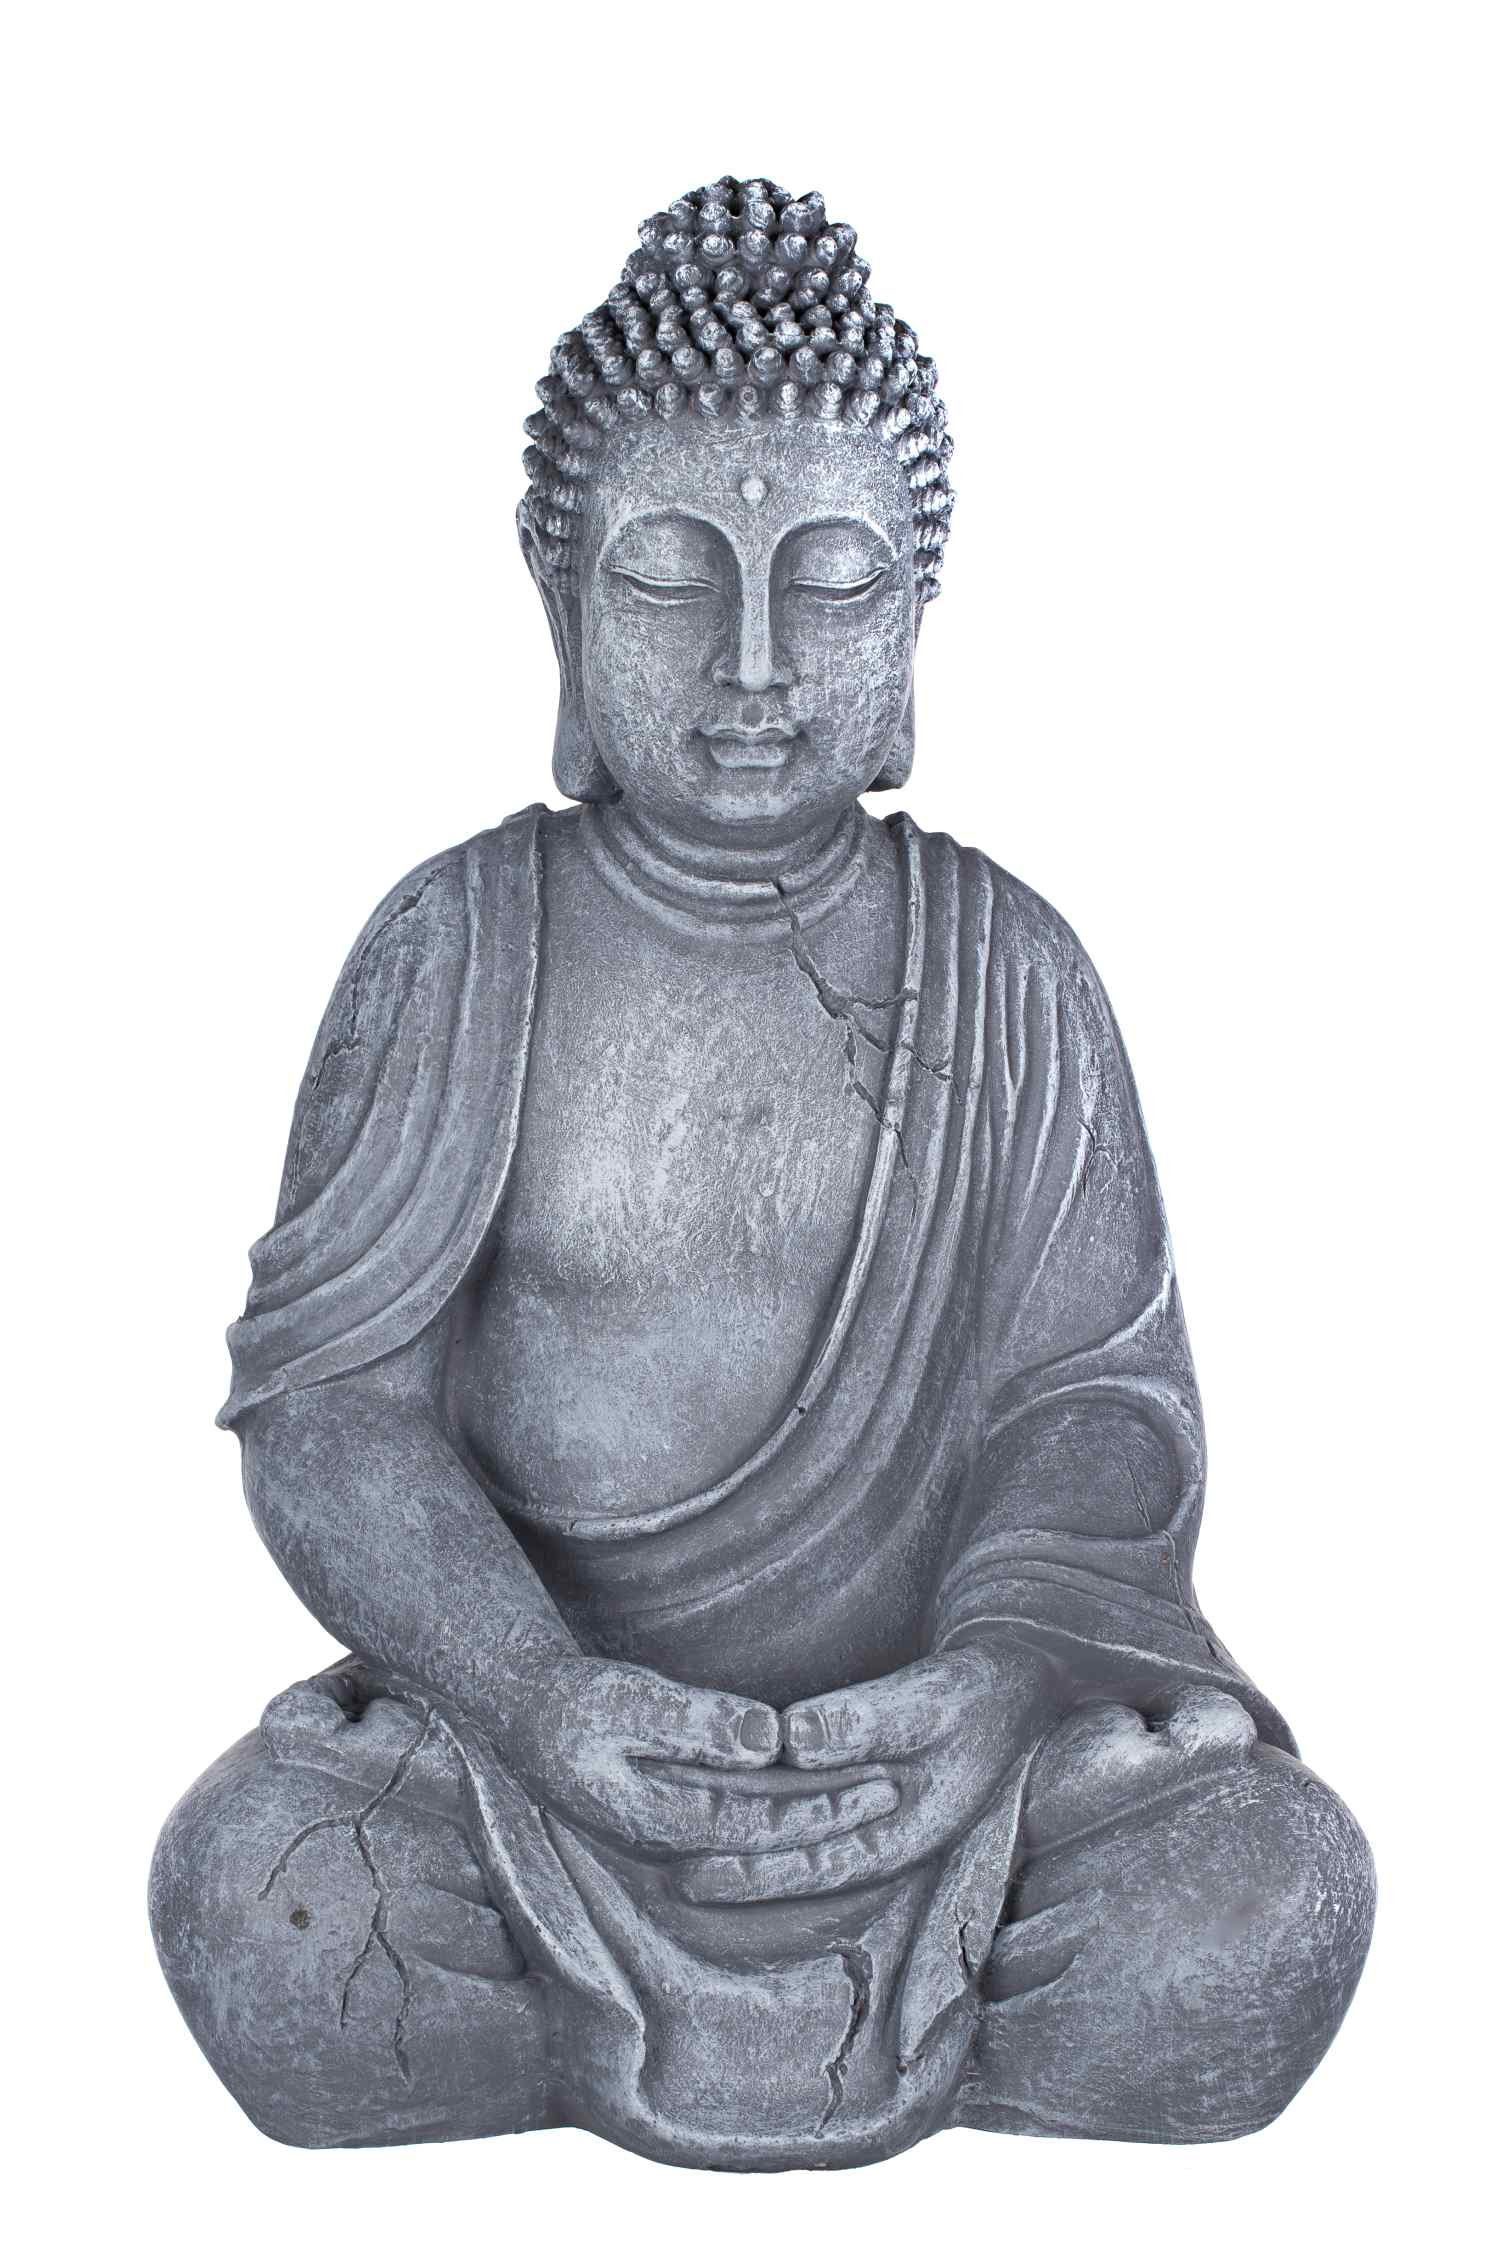 BIRENDY Buddhafigur Buddha SWK33013A Steingrau Figur XL53cm Statue Büste Gartendeko aus Kunststein